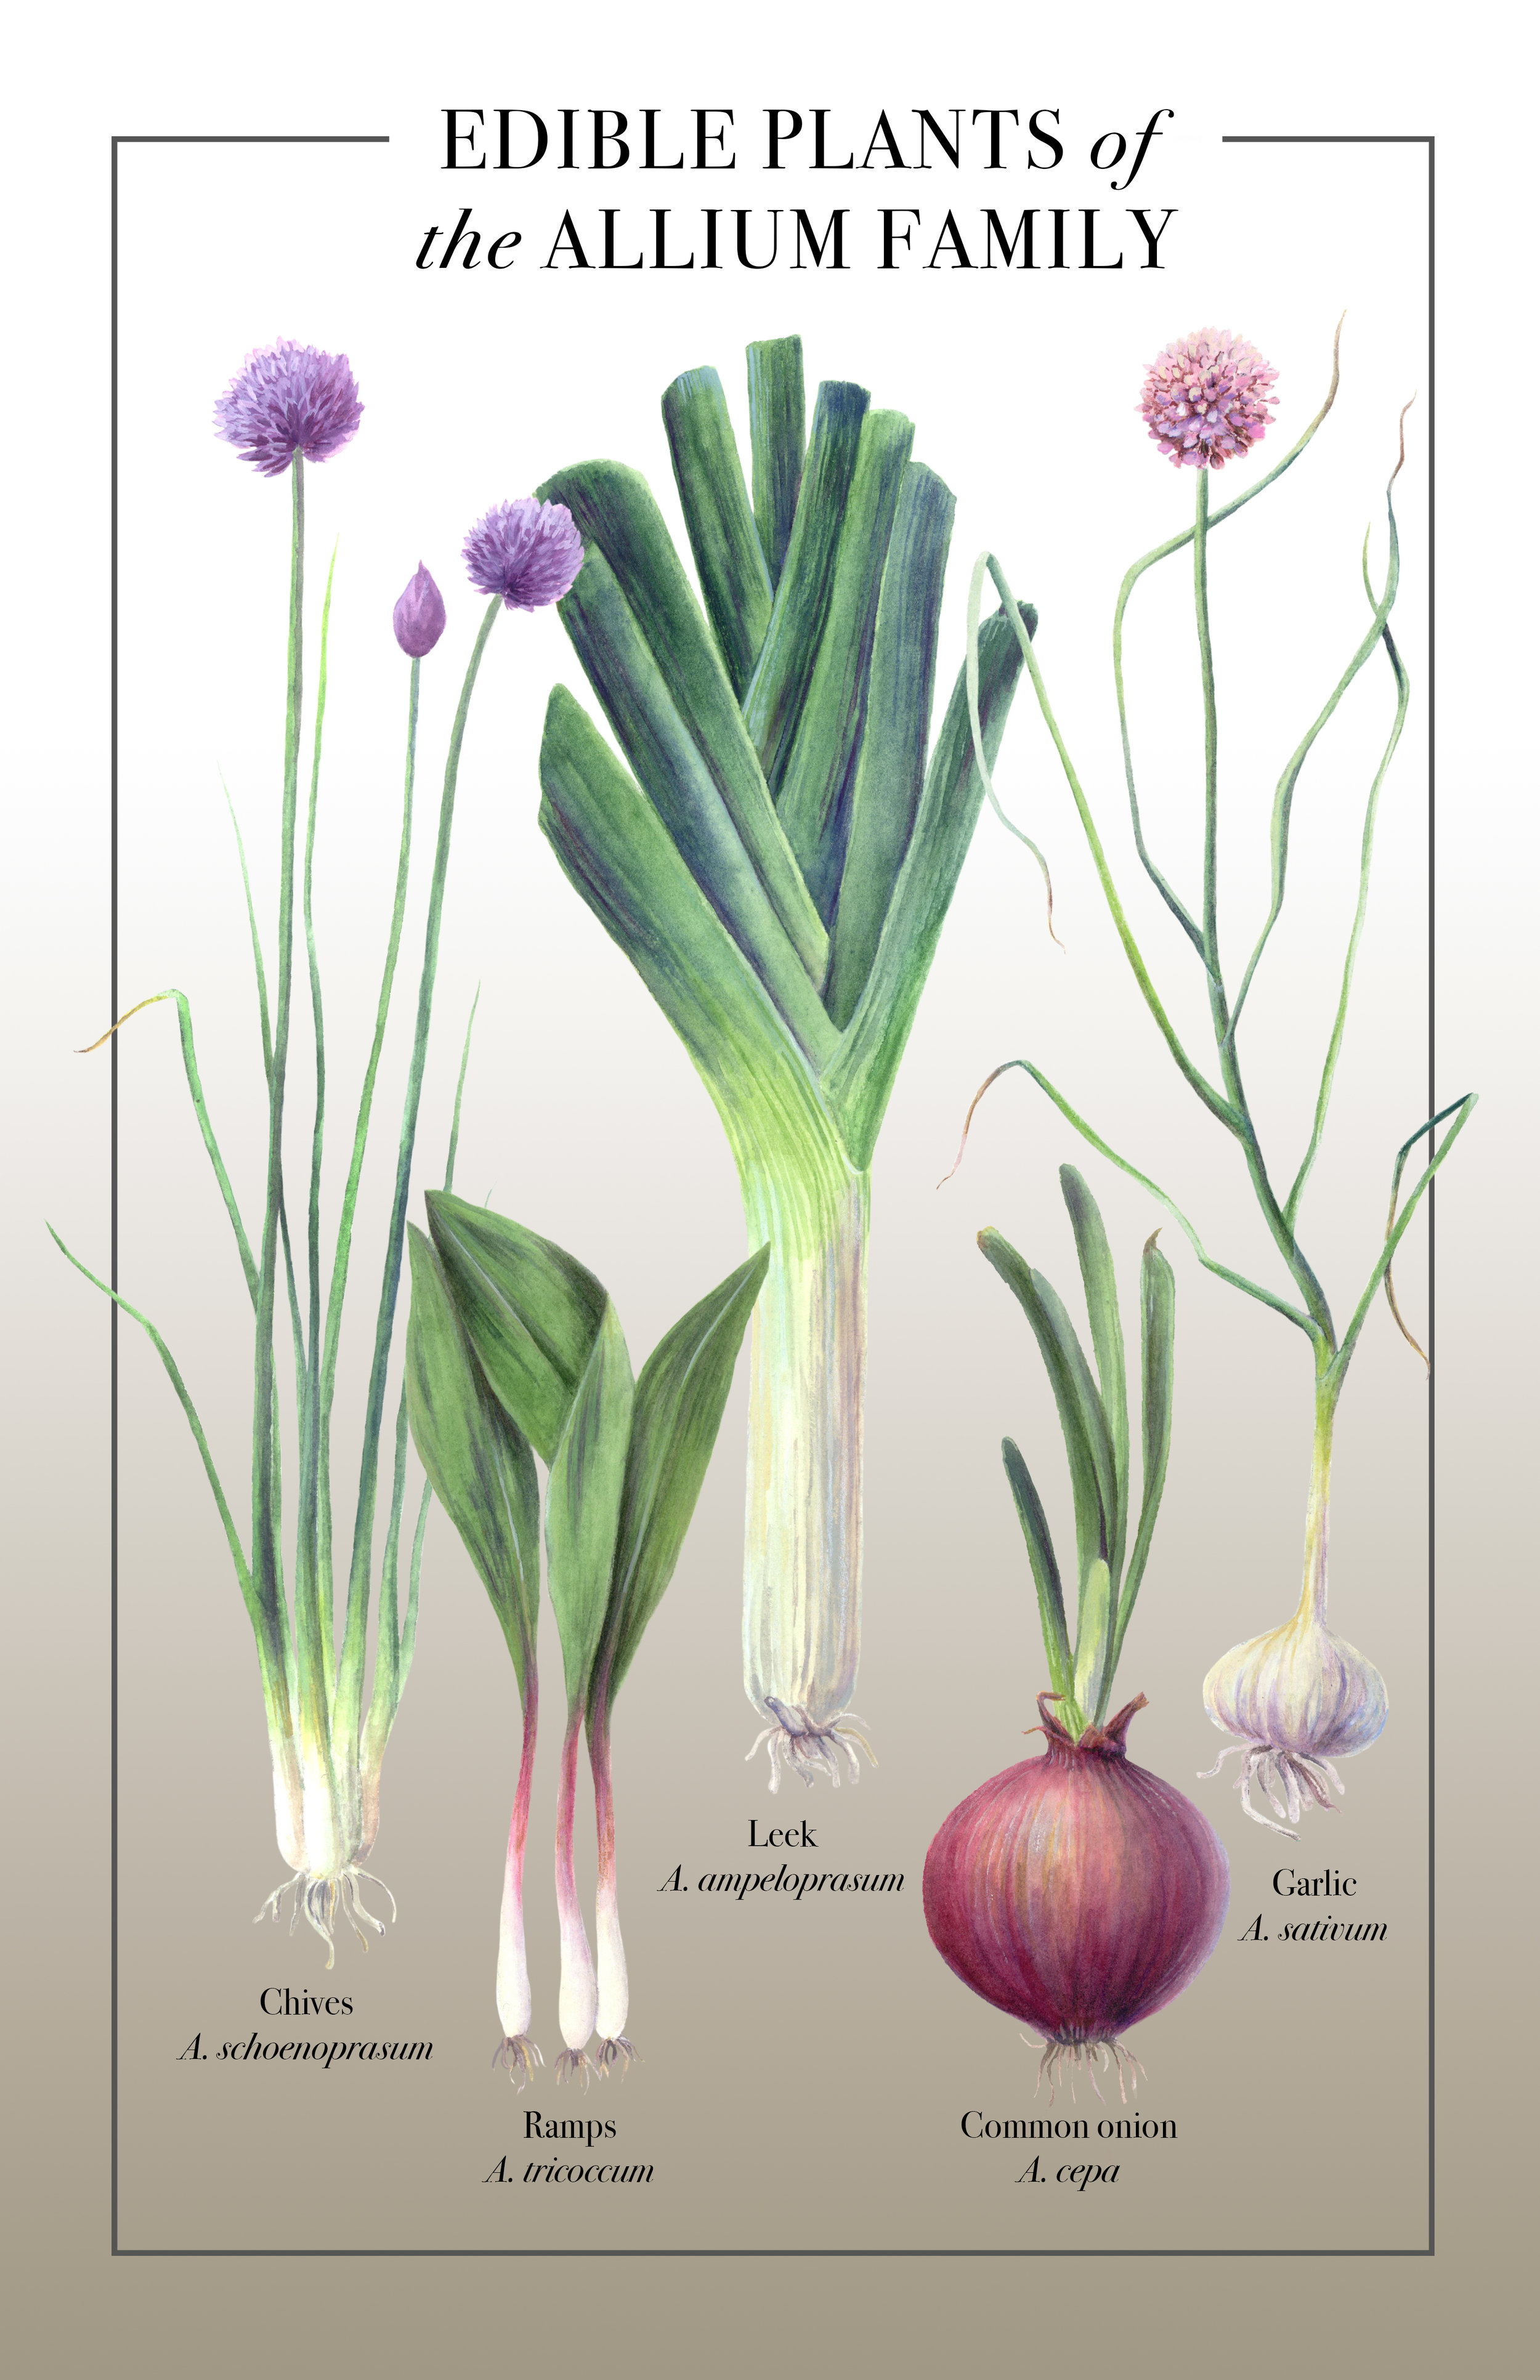 Edible Alliums